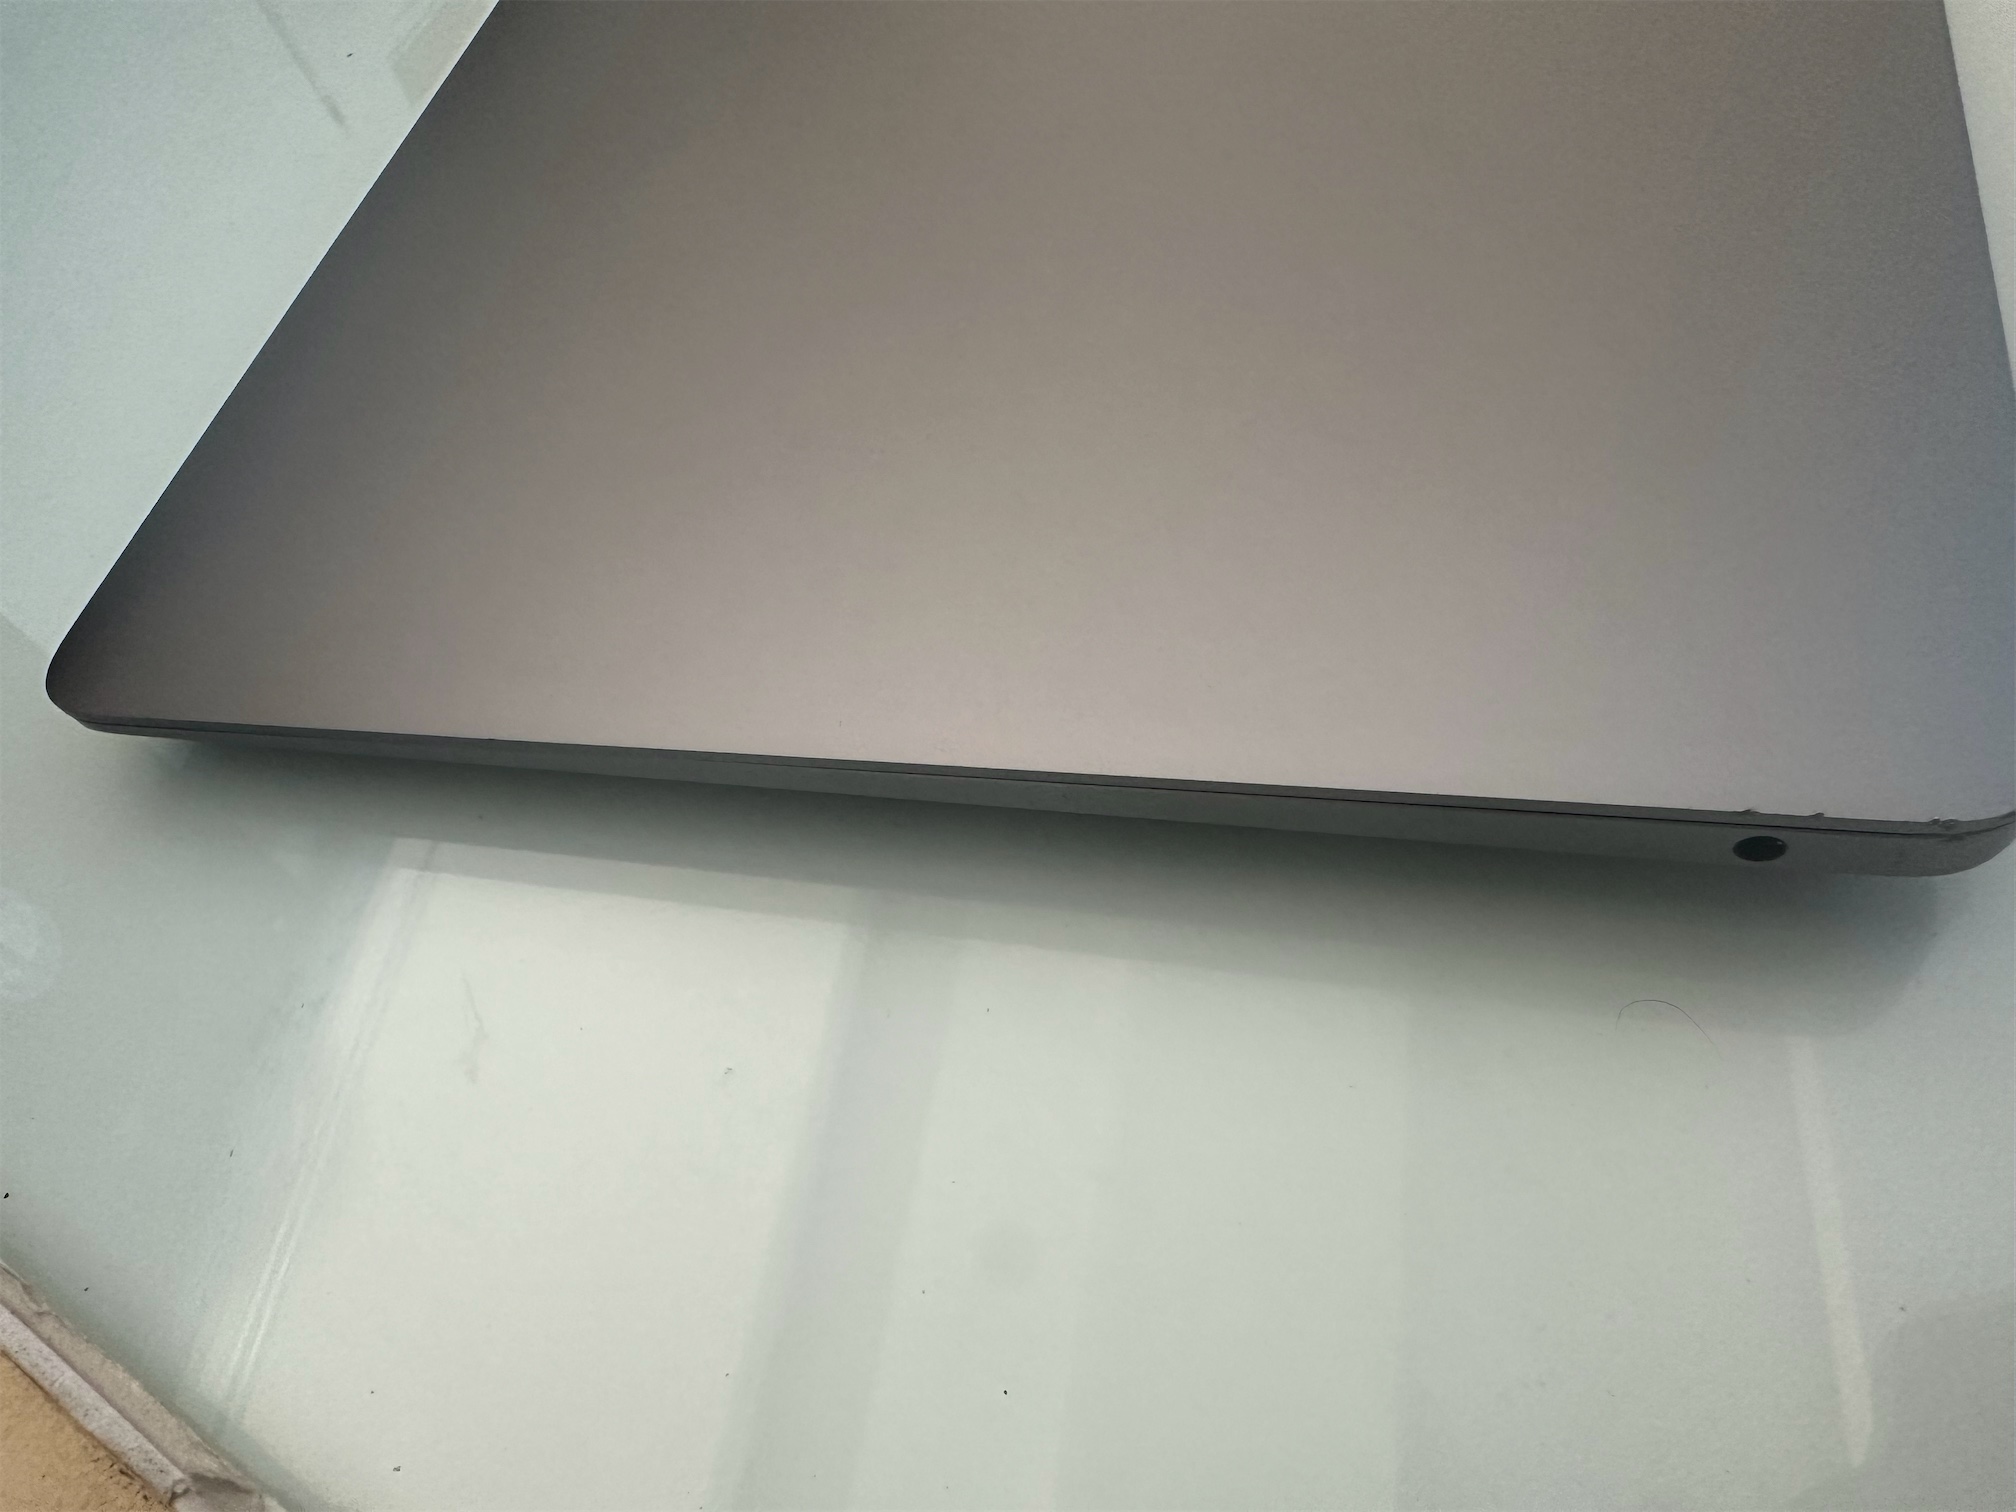 computadoras y laptops - MacBook Air M1 2020 2